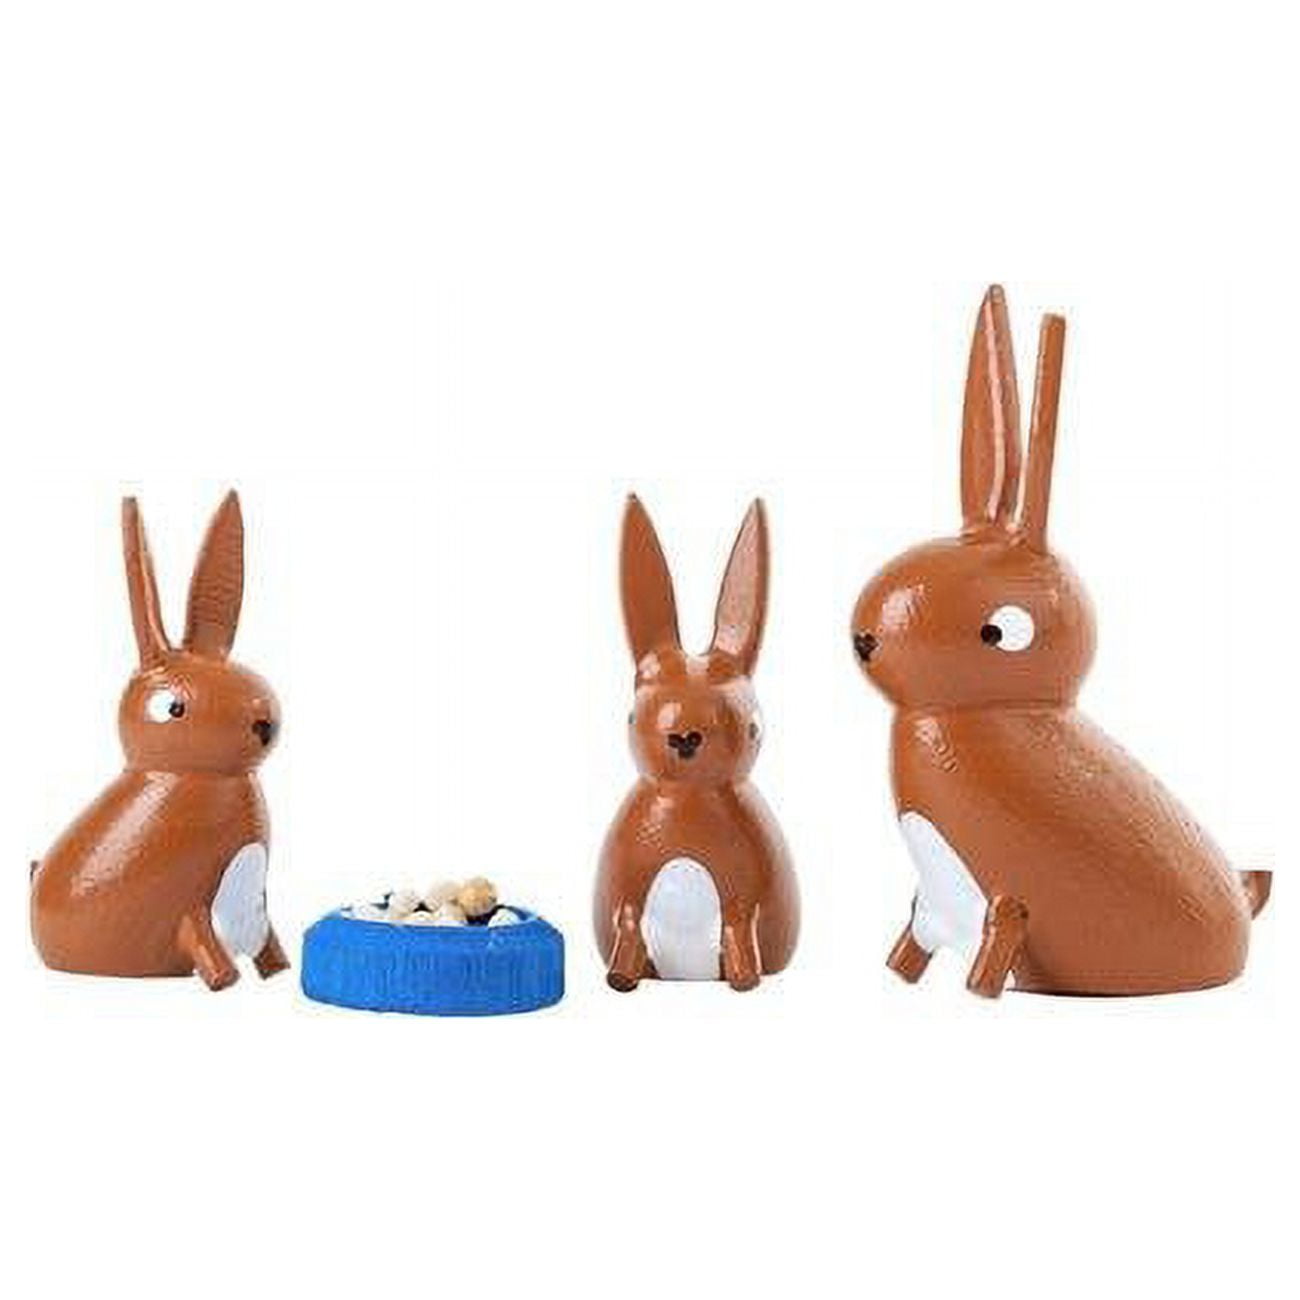 076-001 Dregeno Easter Ornament Rabbit Family